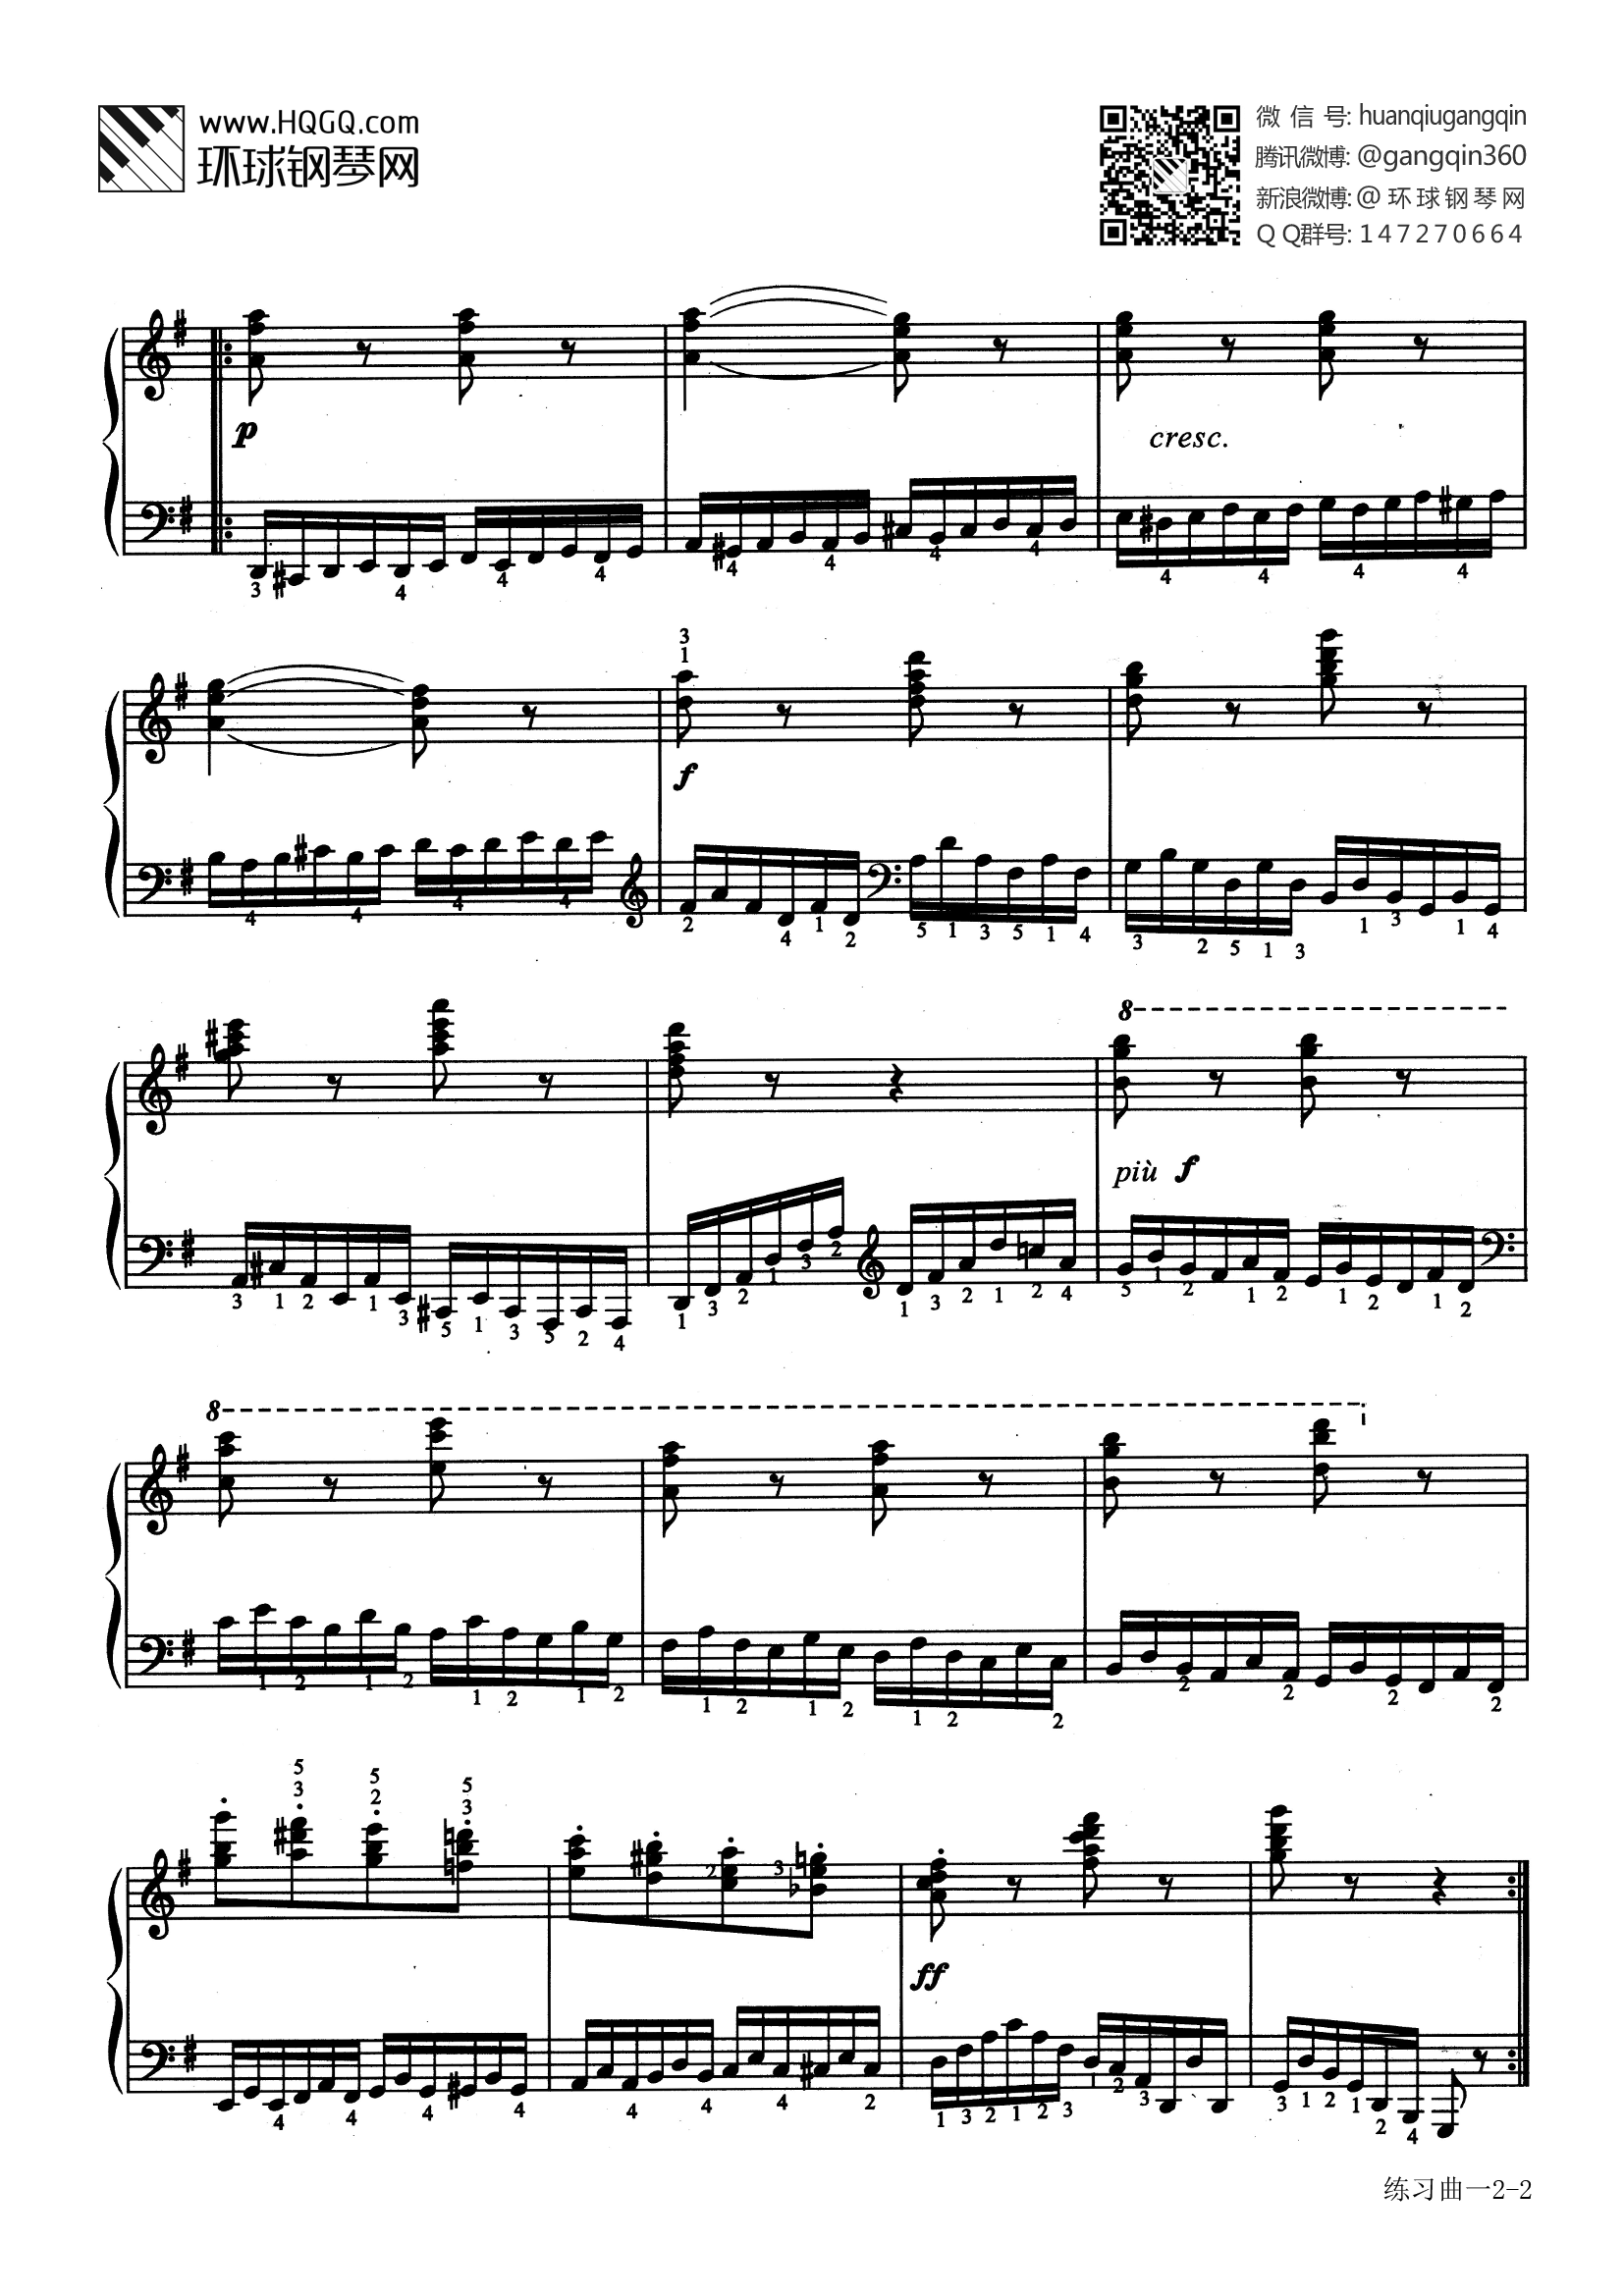 钢琴七级考级曲目谱子图片